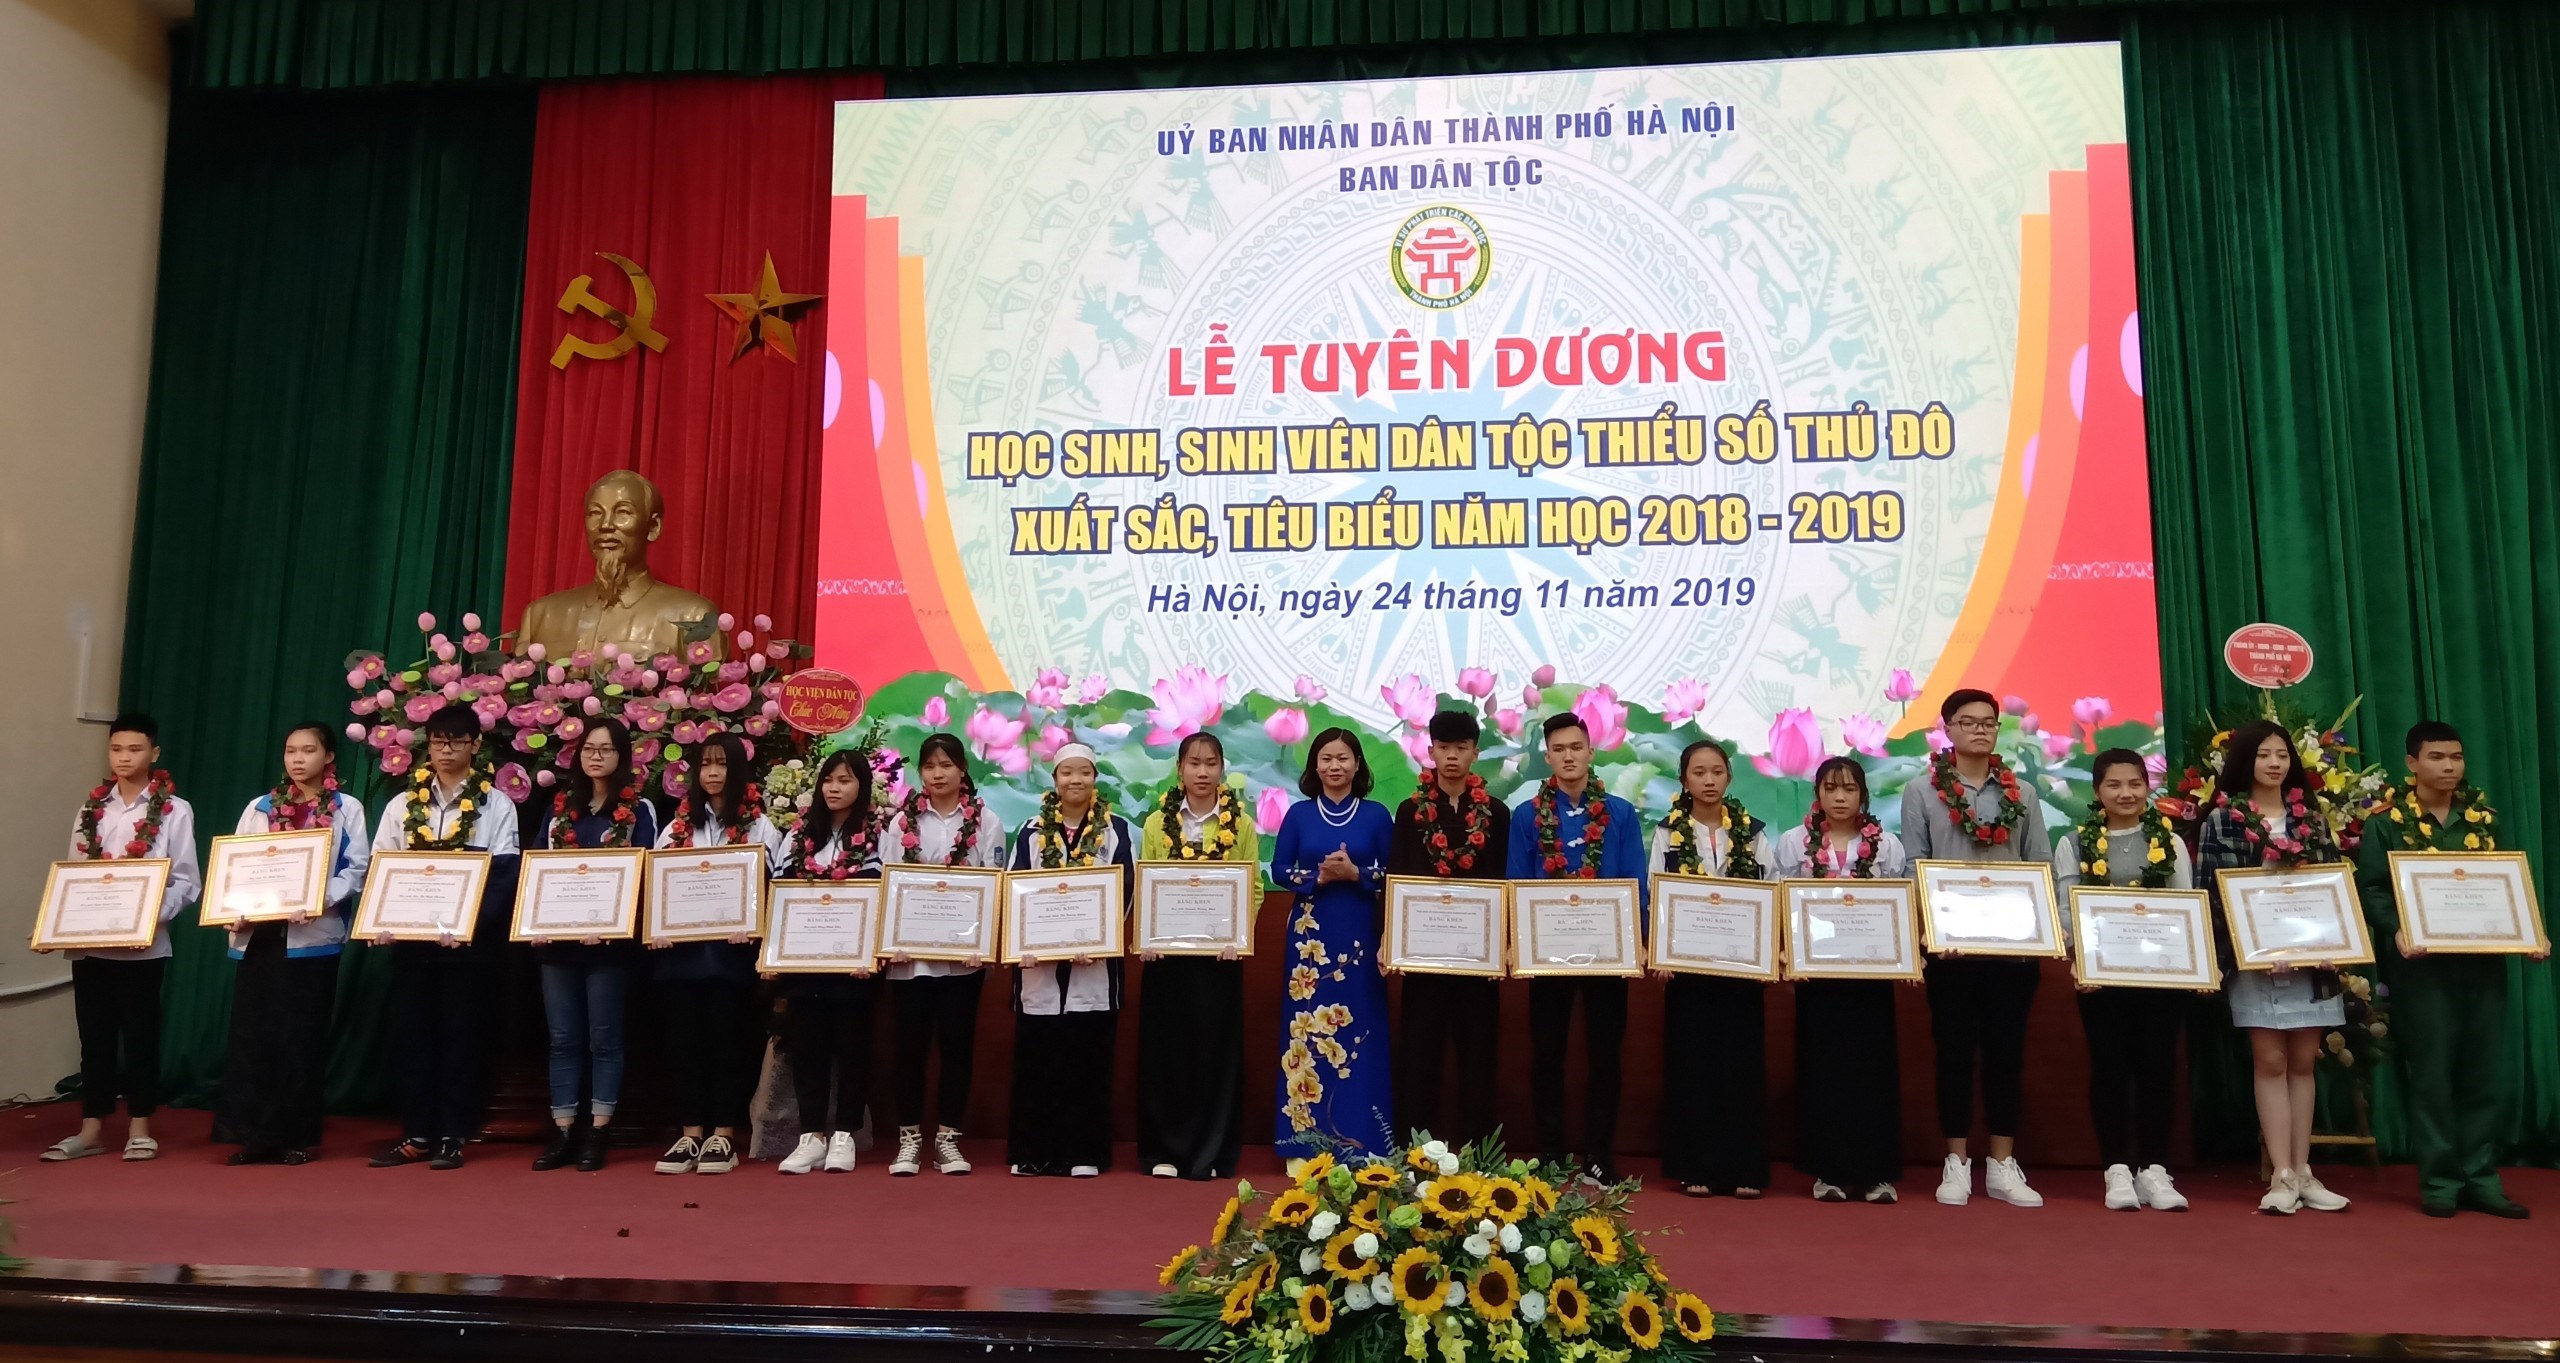 Bà Trần Thị Tuyến, Trưởng ban Dân vận TP. Hà Nội trao Bằng khen của Chủ tịch UBND TP. Hà Nội cho 18 em học sinh có thành tích cao trong các kỳ thi học sinh giỏi cấp TP và đỗ đại học điểm cao trong năm học 2018-2019